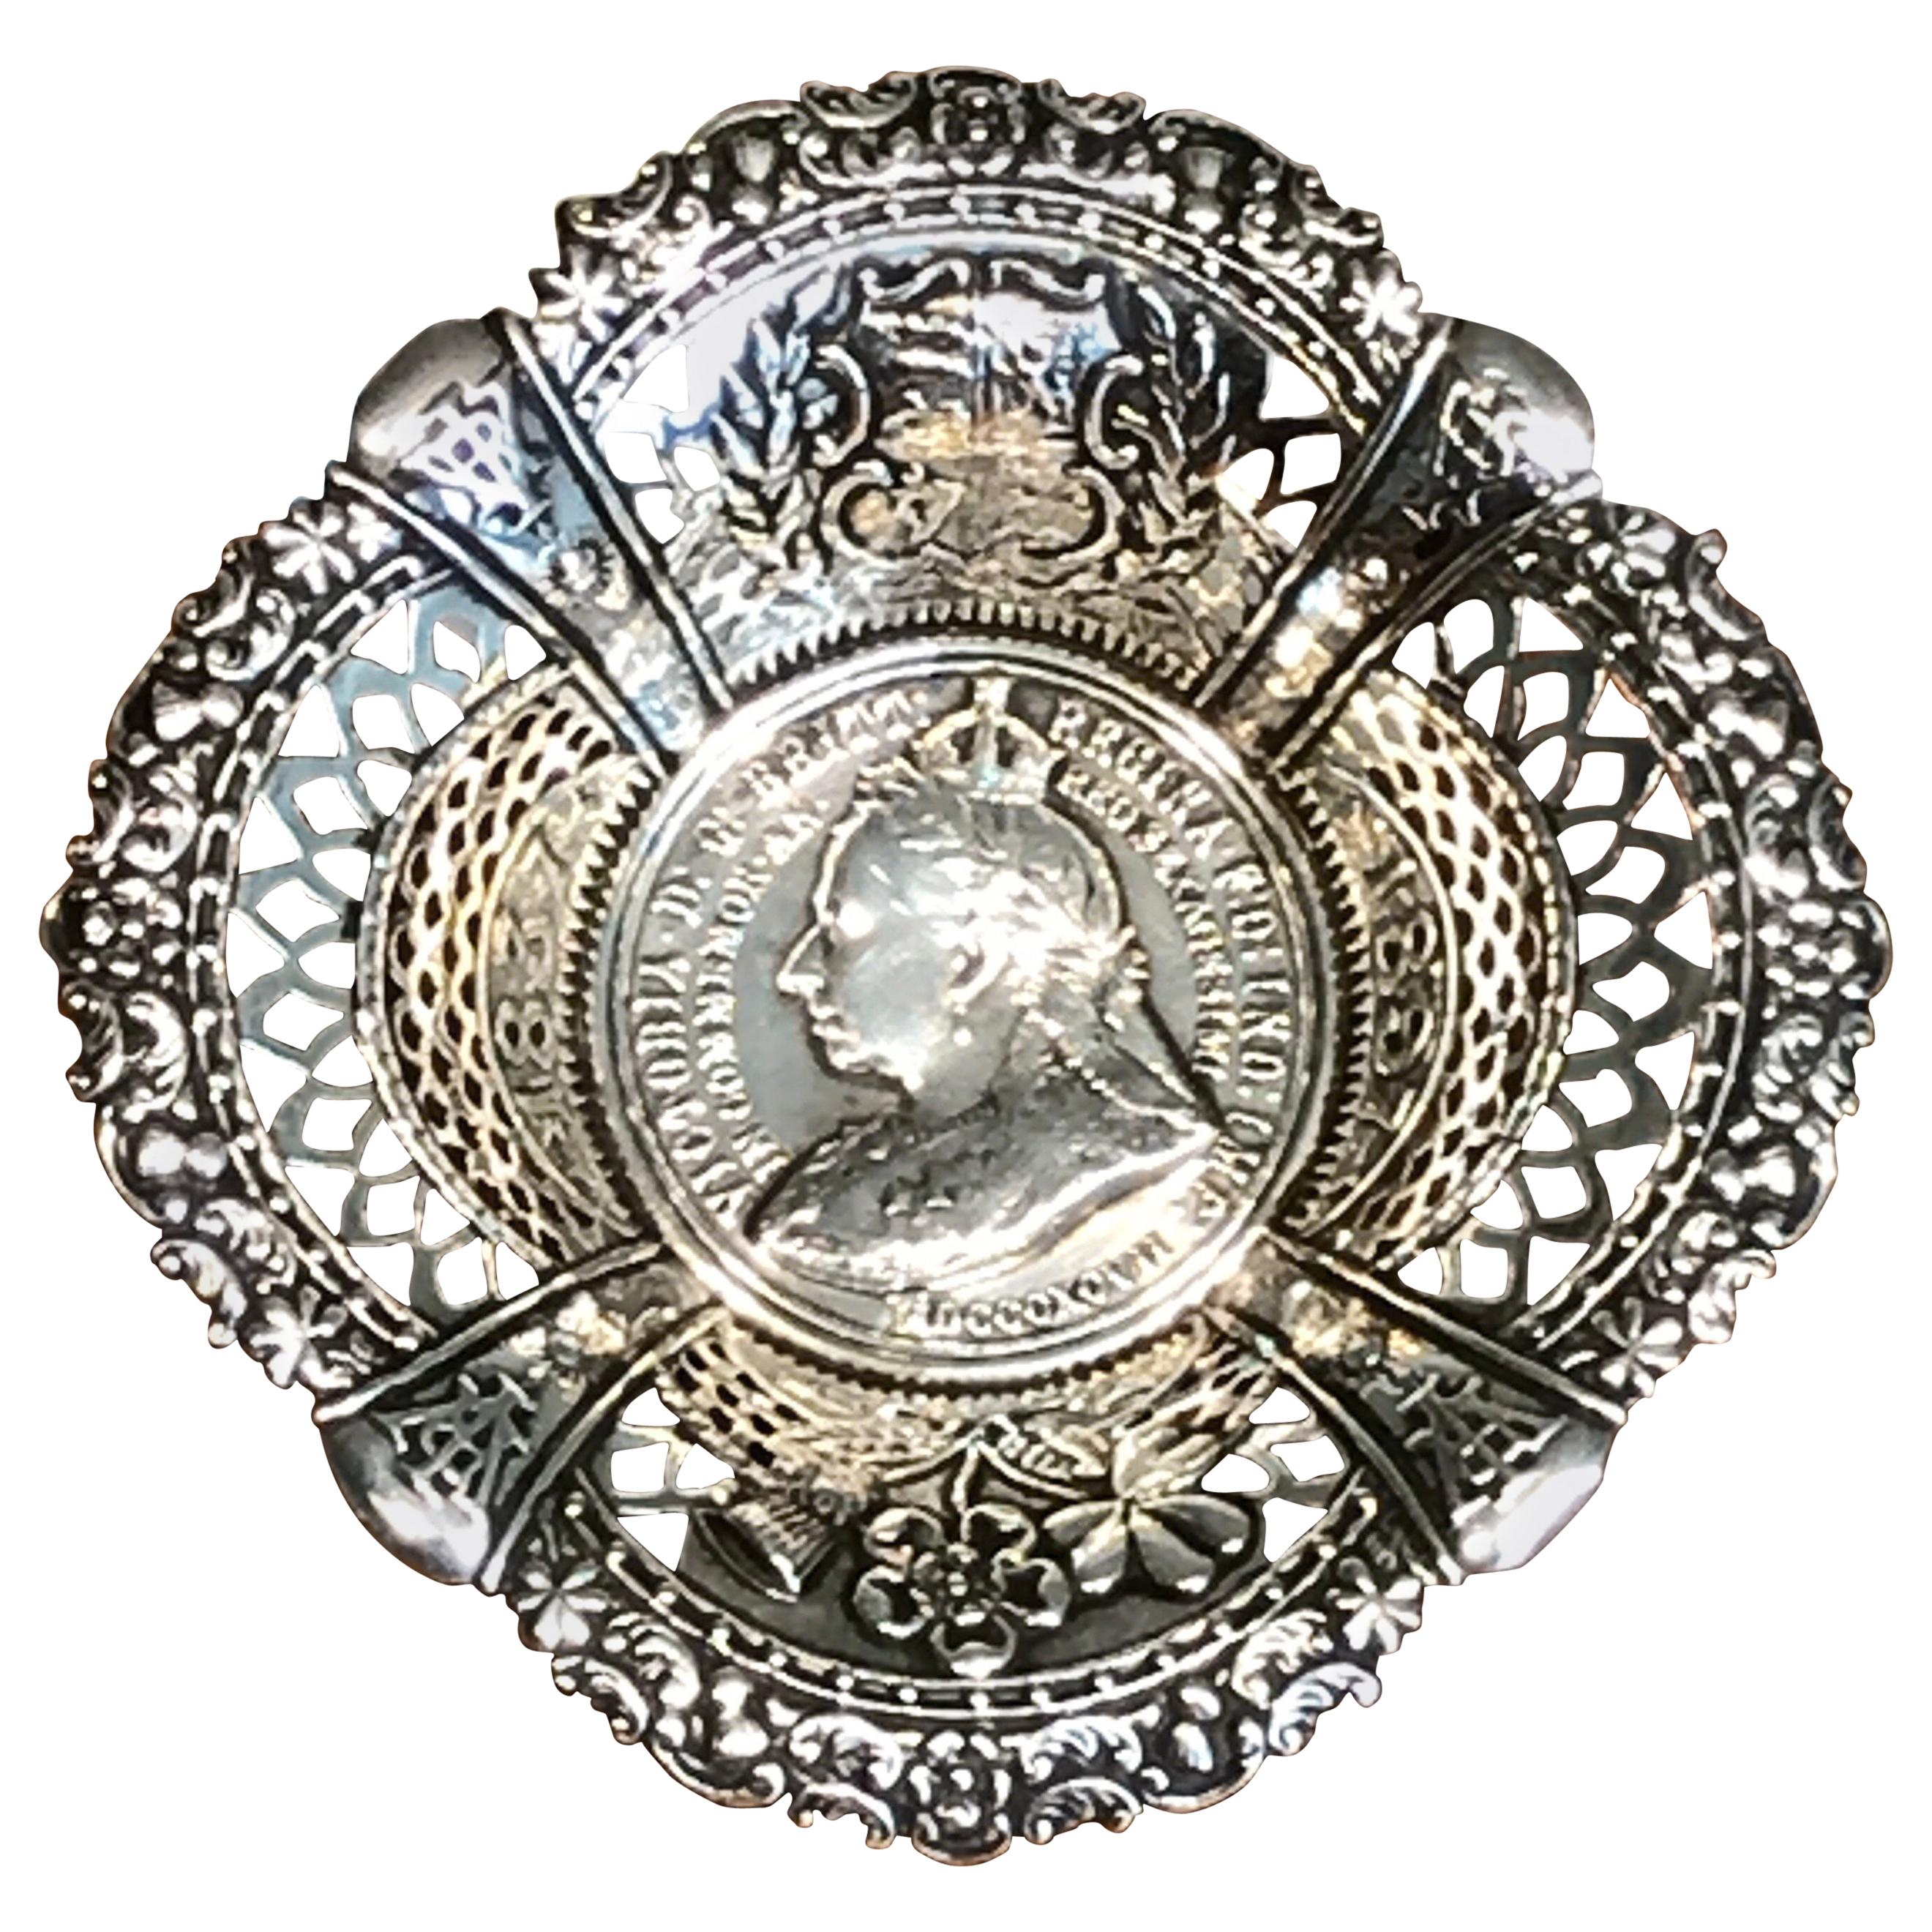 Queen Victoria’s Diamond Jubilee Sterling Commemorative Bowl